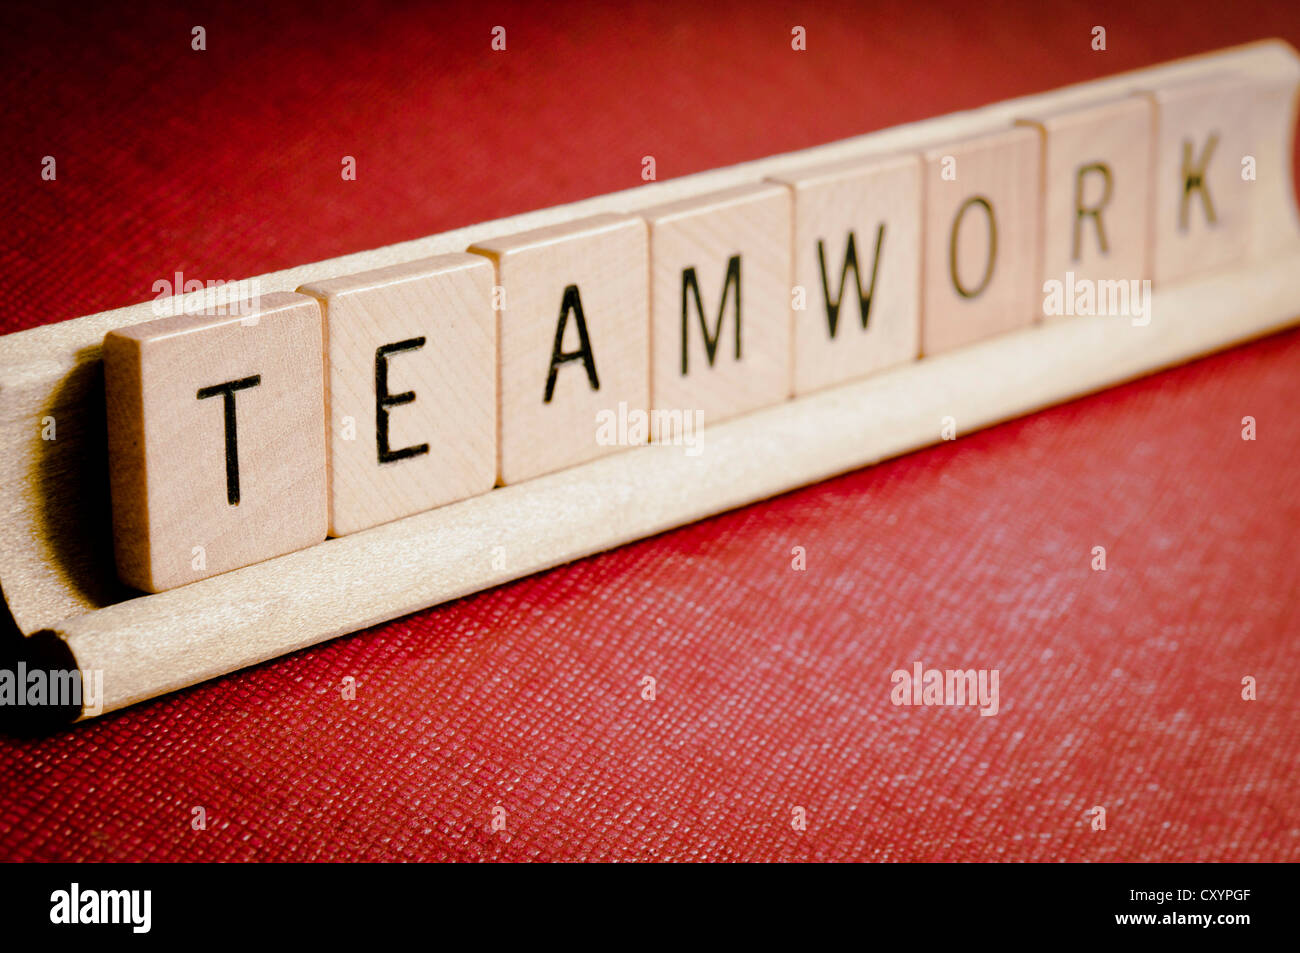 Teamwork mit Scrabble Fliesen geschrieben Stockfoto